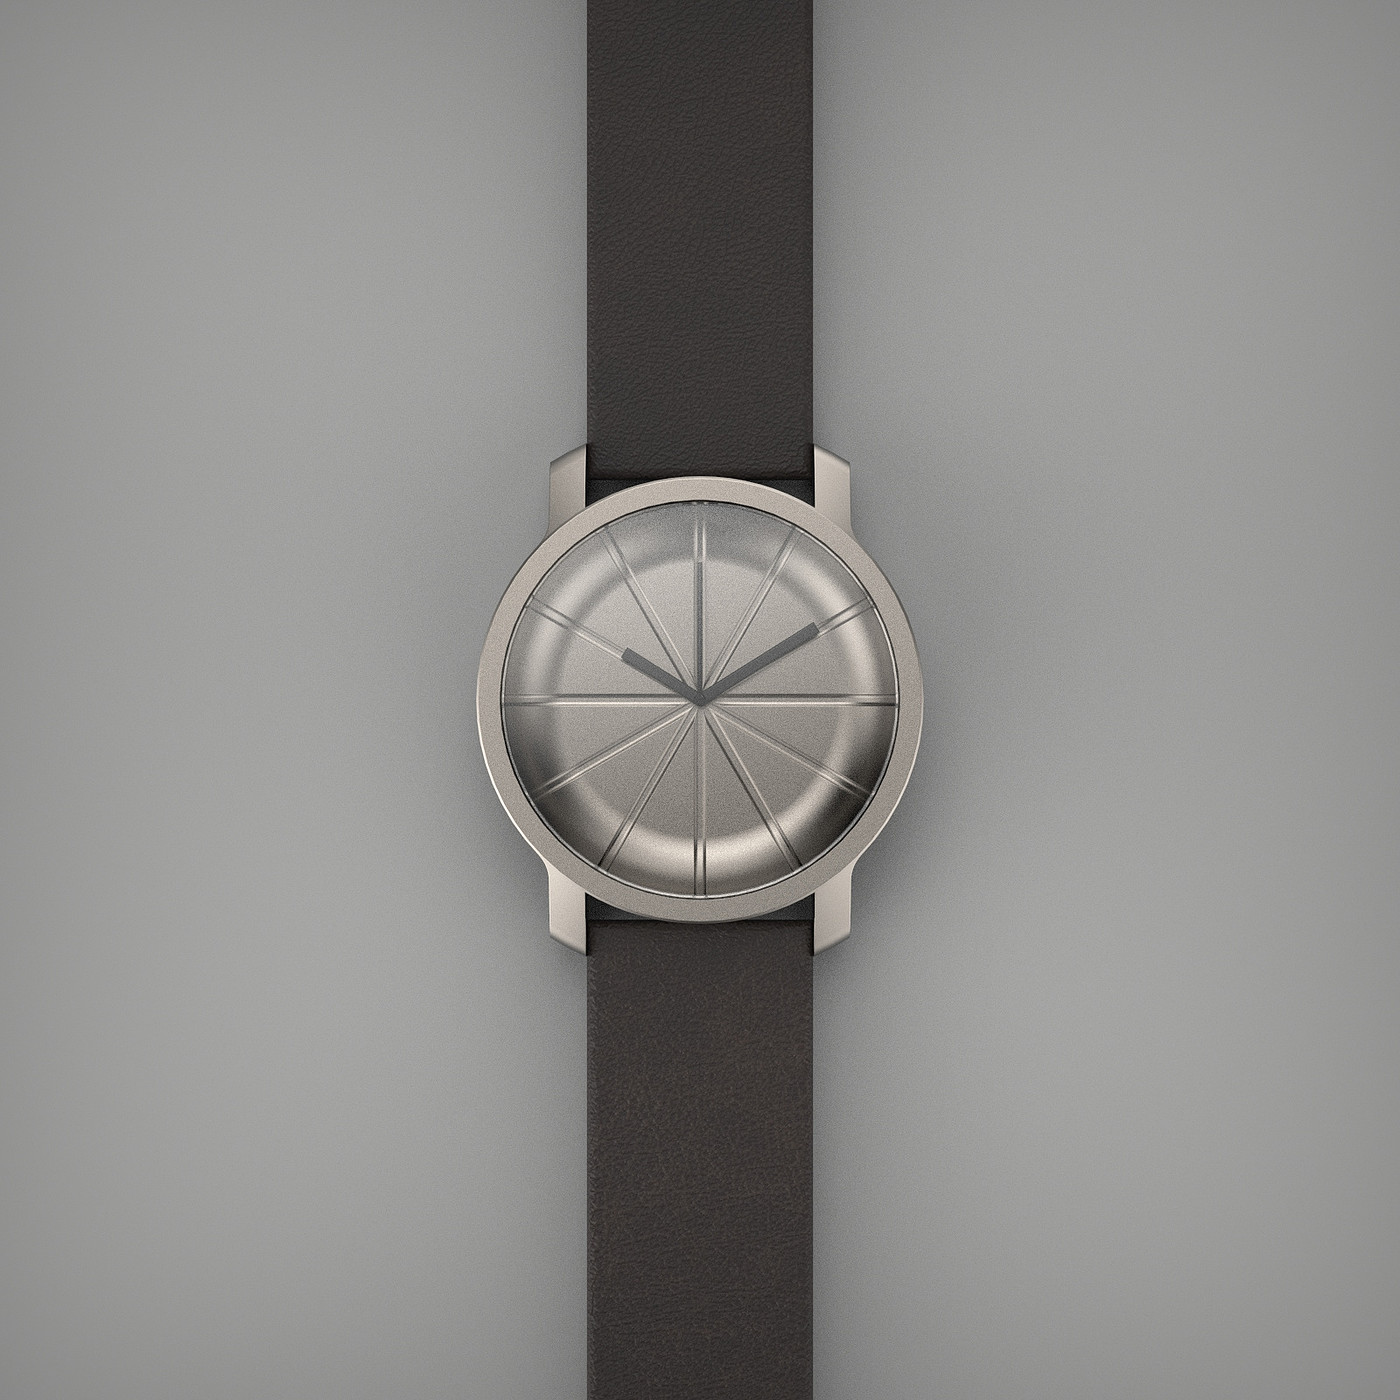 3d，钟表，设计，时间，手表，